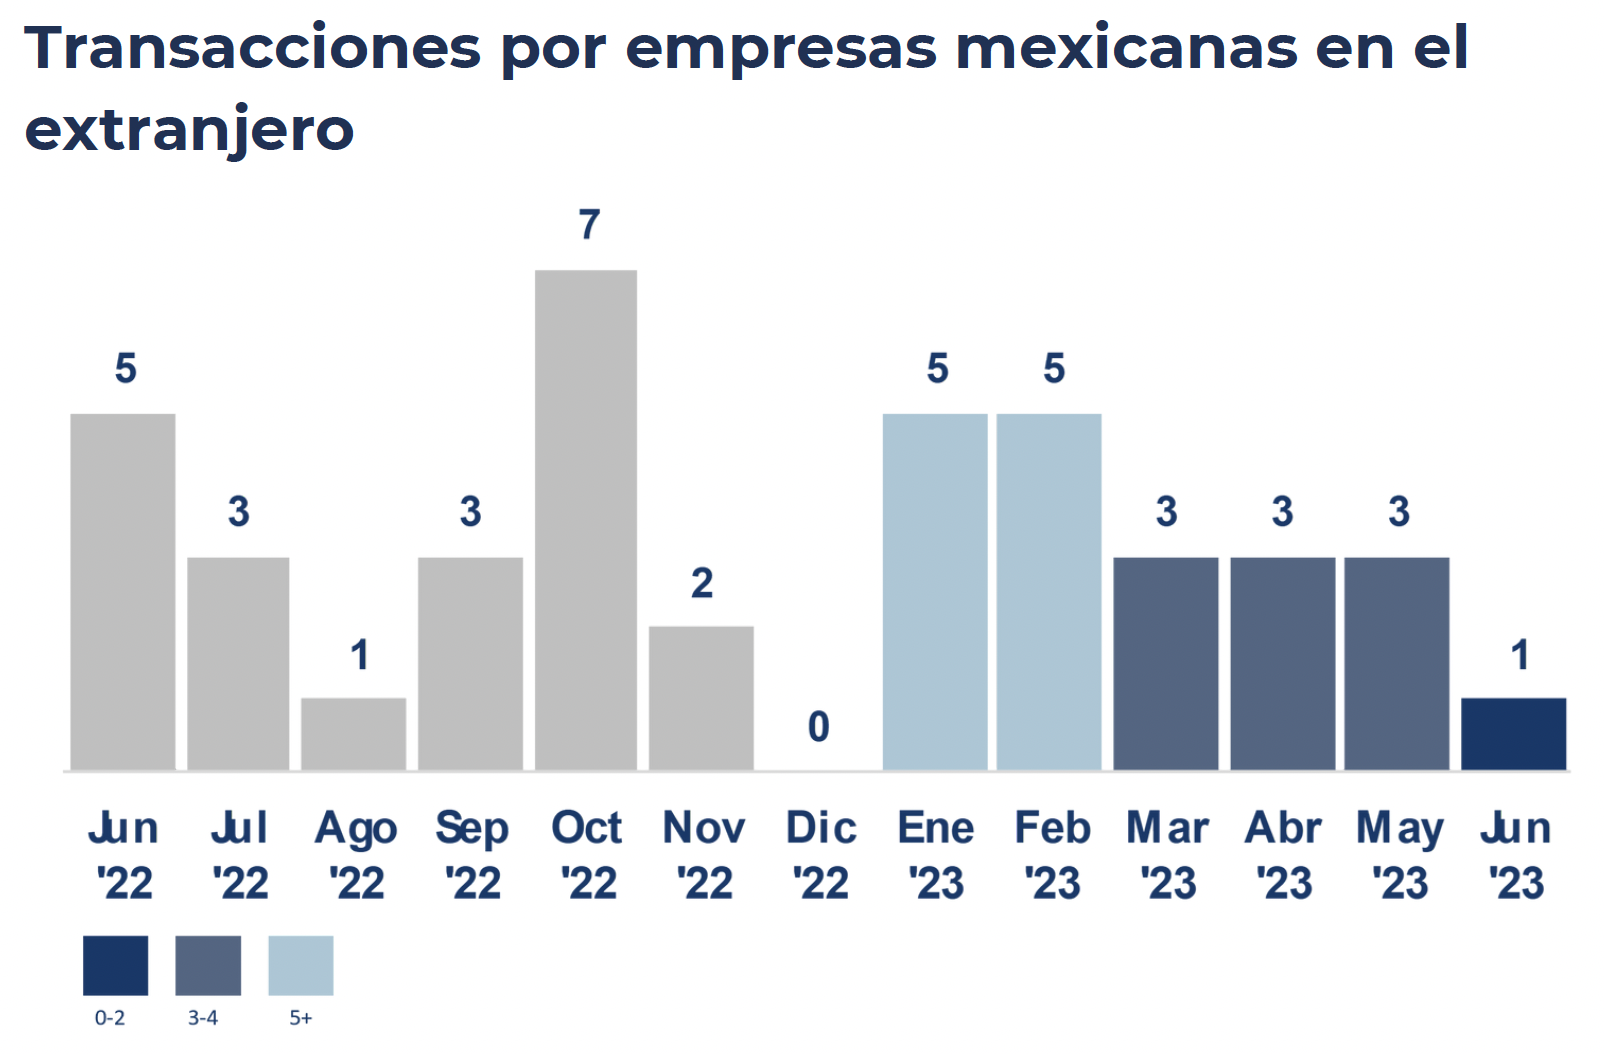 "Transacciones por empresas mexicanas en el extranjero"